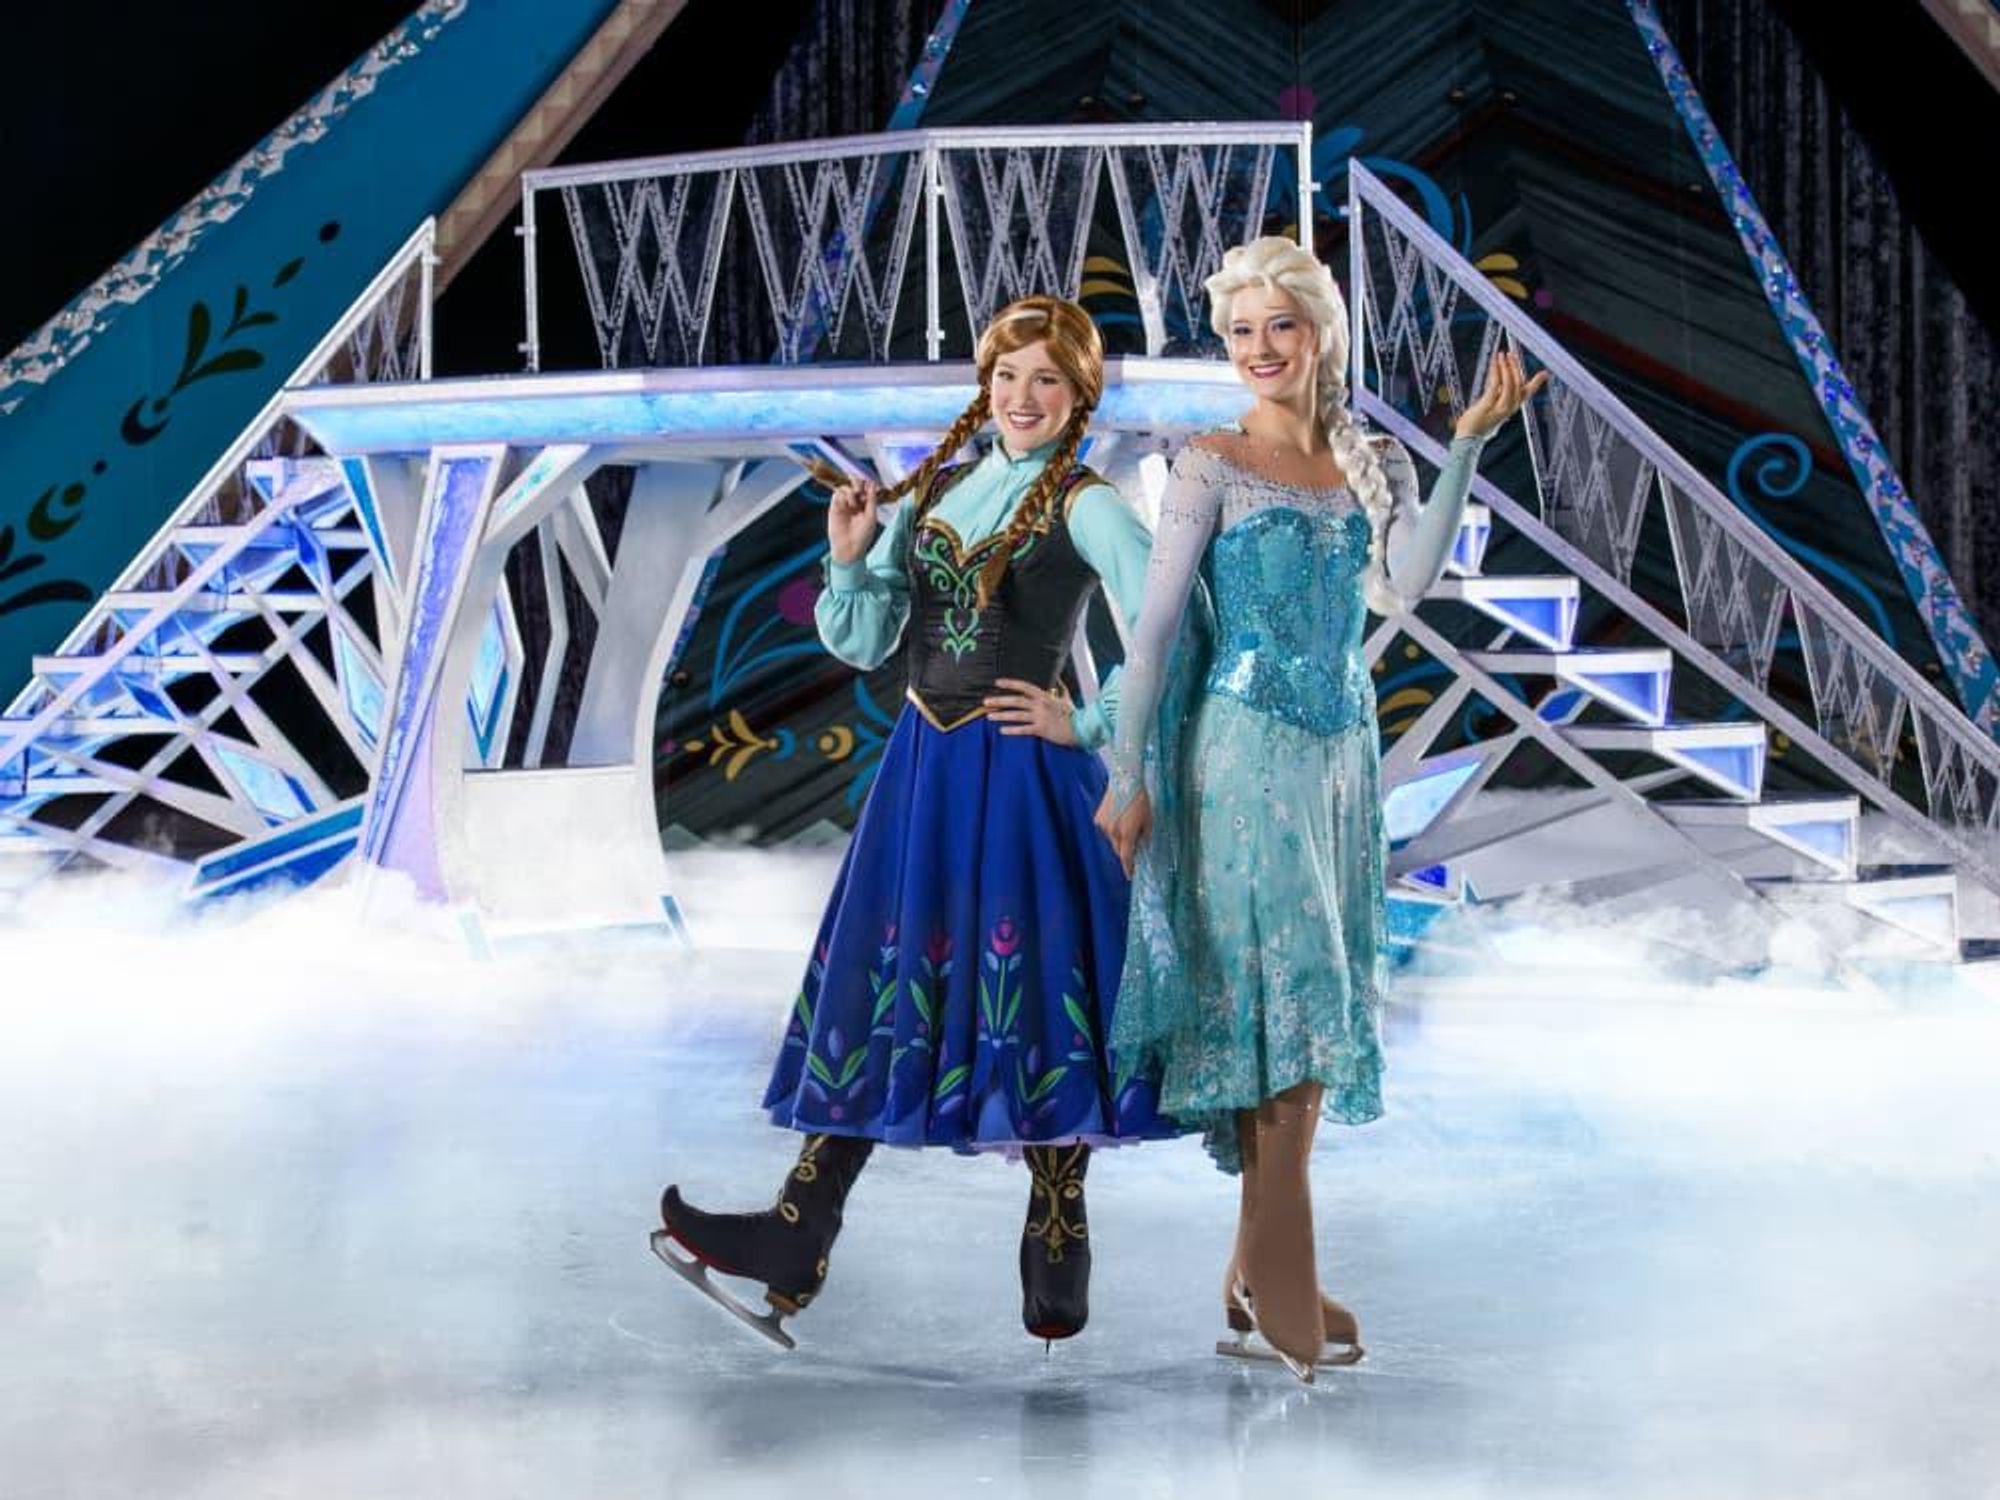 Disney on Ice: Frozen